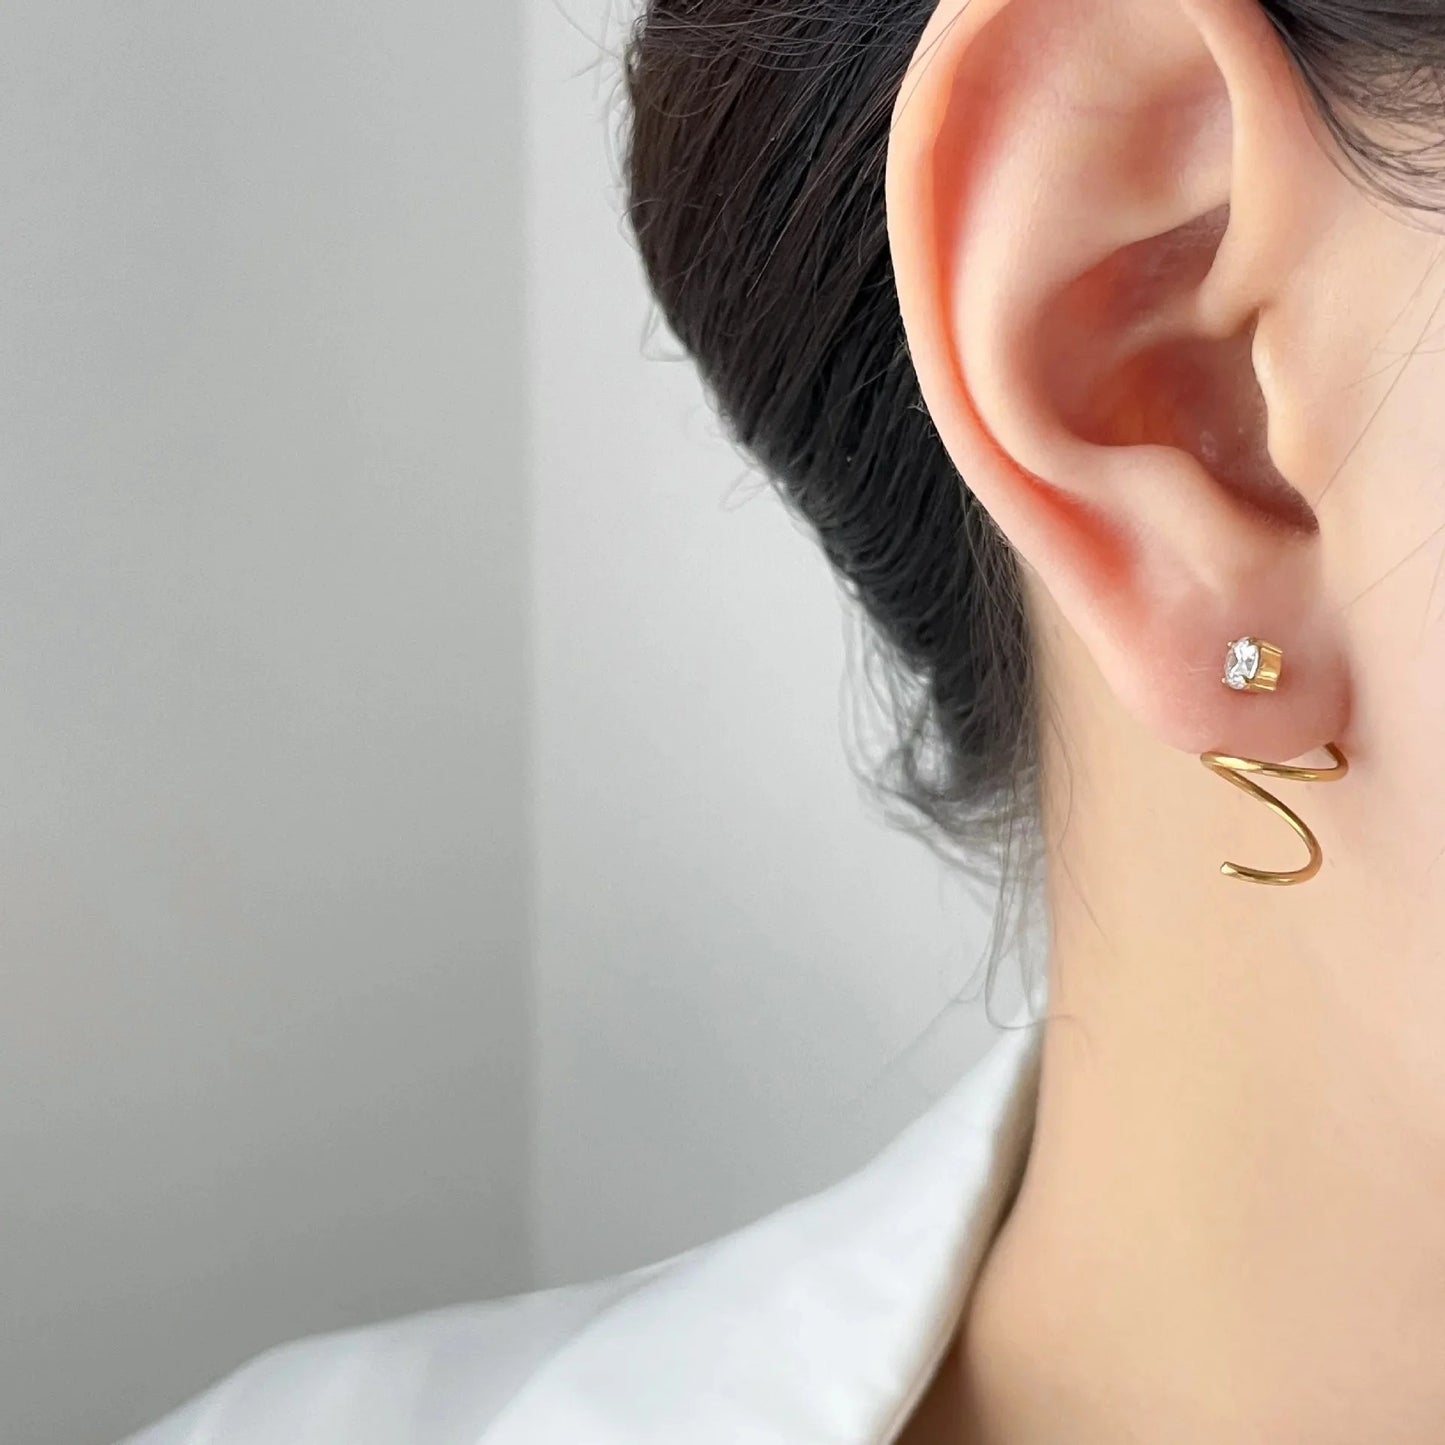 Irregular Spiral earrings